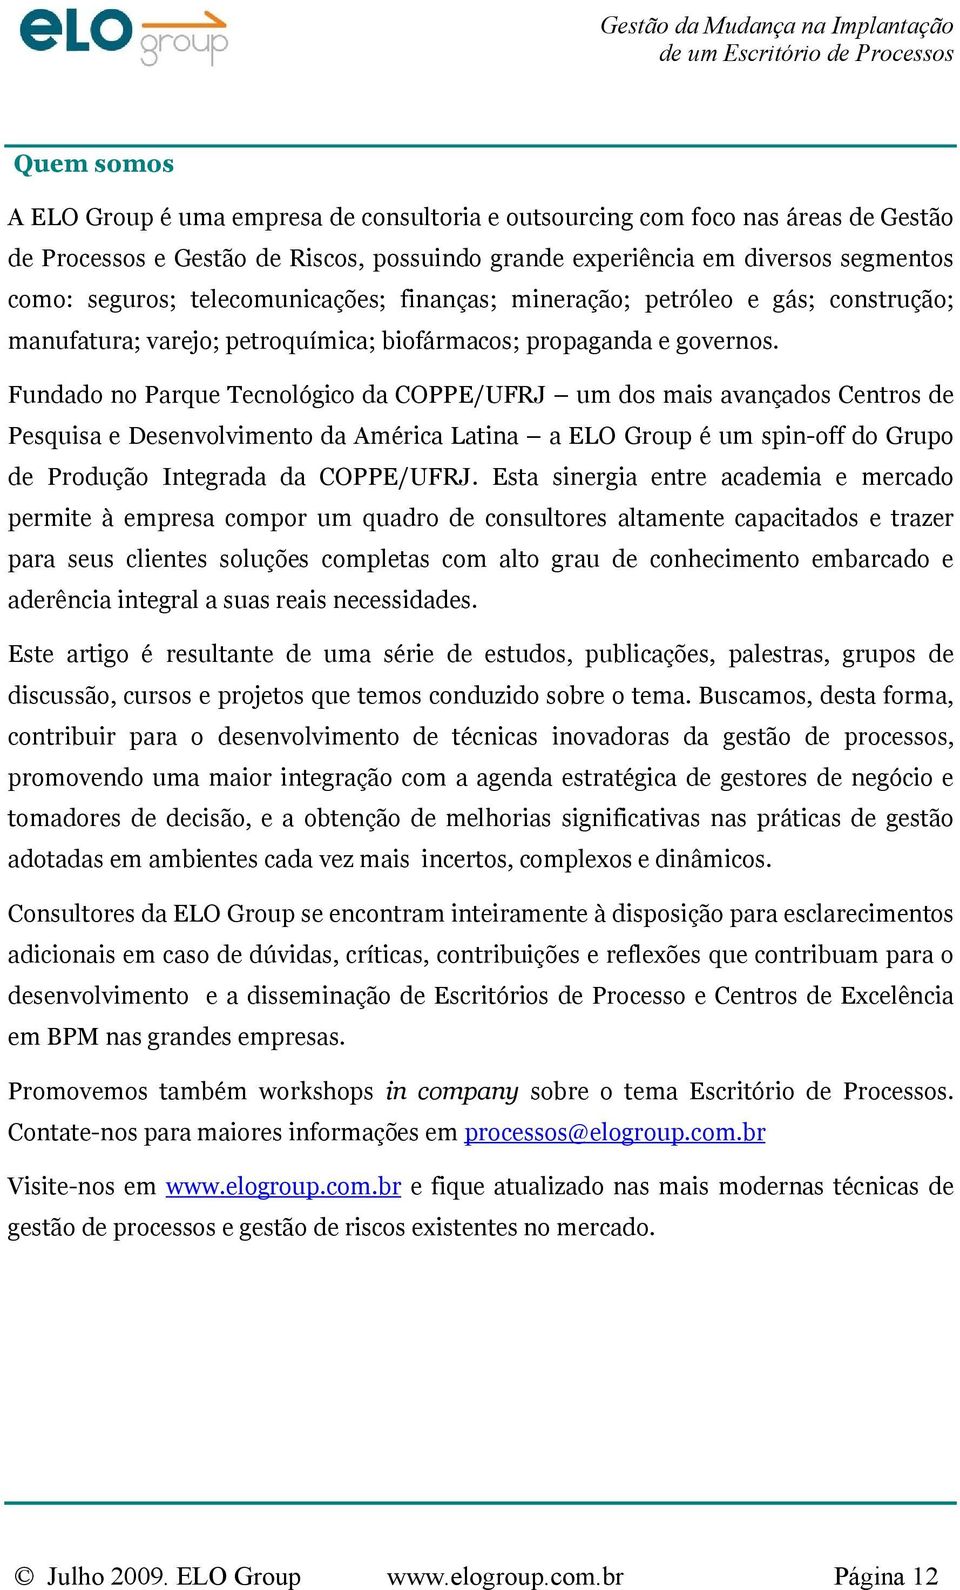 Fundado no Parque Tecnológico da COPPE/UFRJ um dos mais avançados Centros de Pesquisa e Desenvolvimento da América Latina a ELO Group é um spin-off do Grupo de Produção Integrada da COPPE/UFRJ.